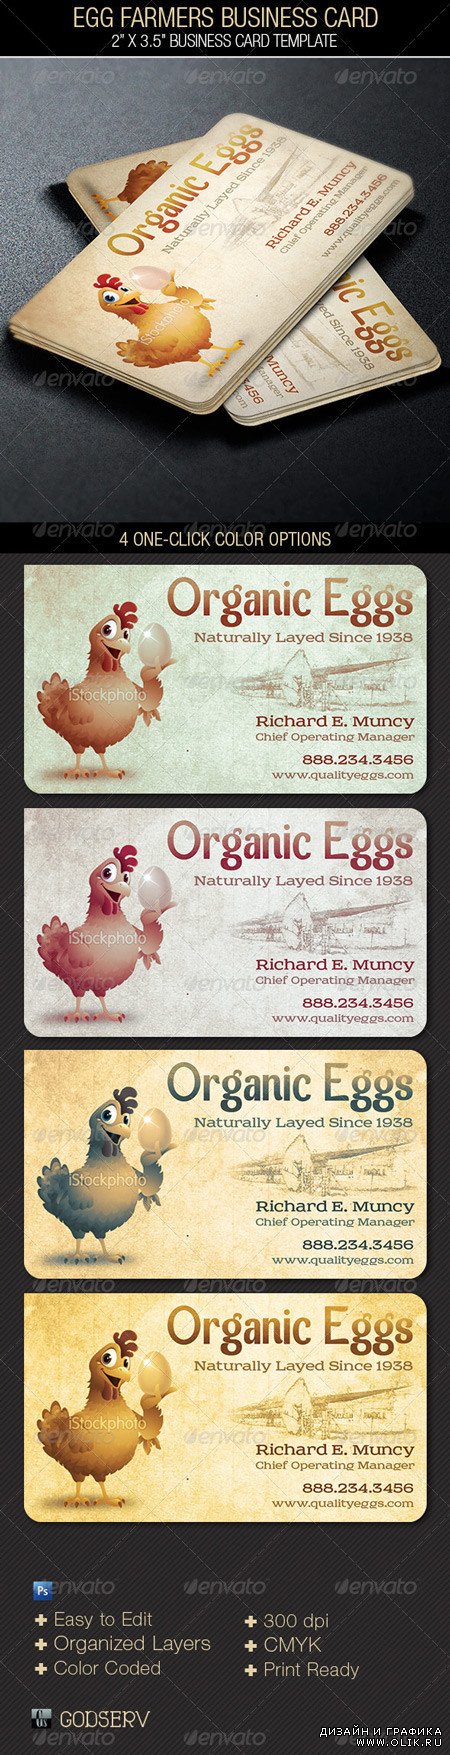 Egg Farmers Business Card